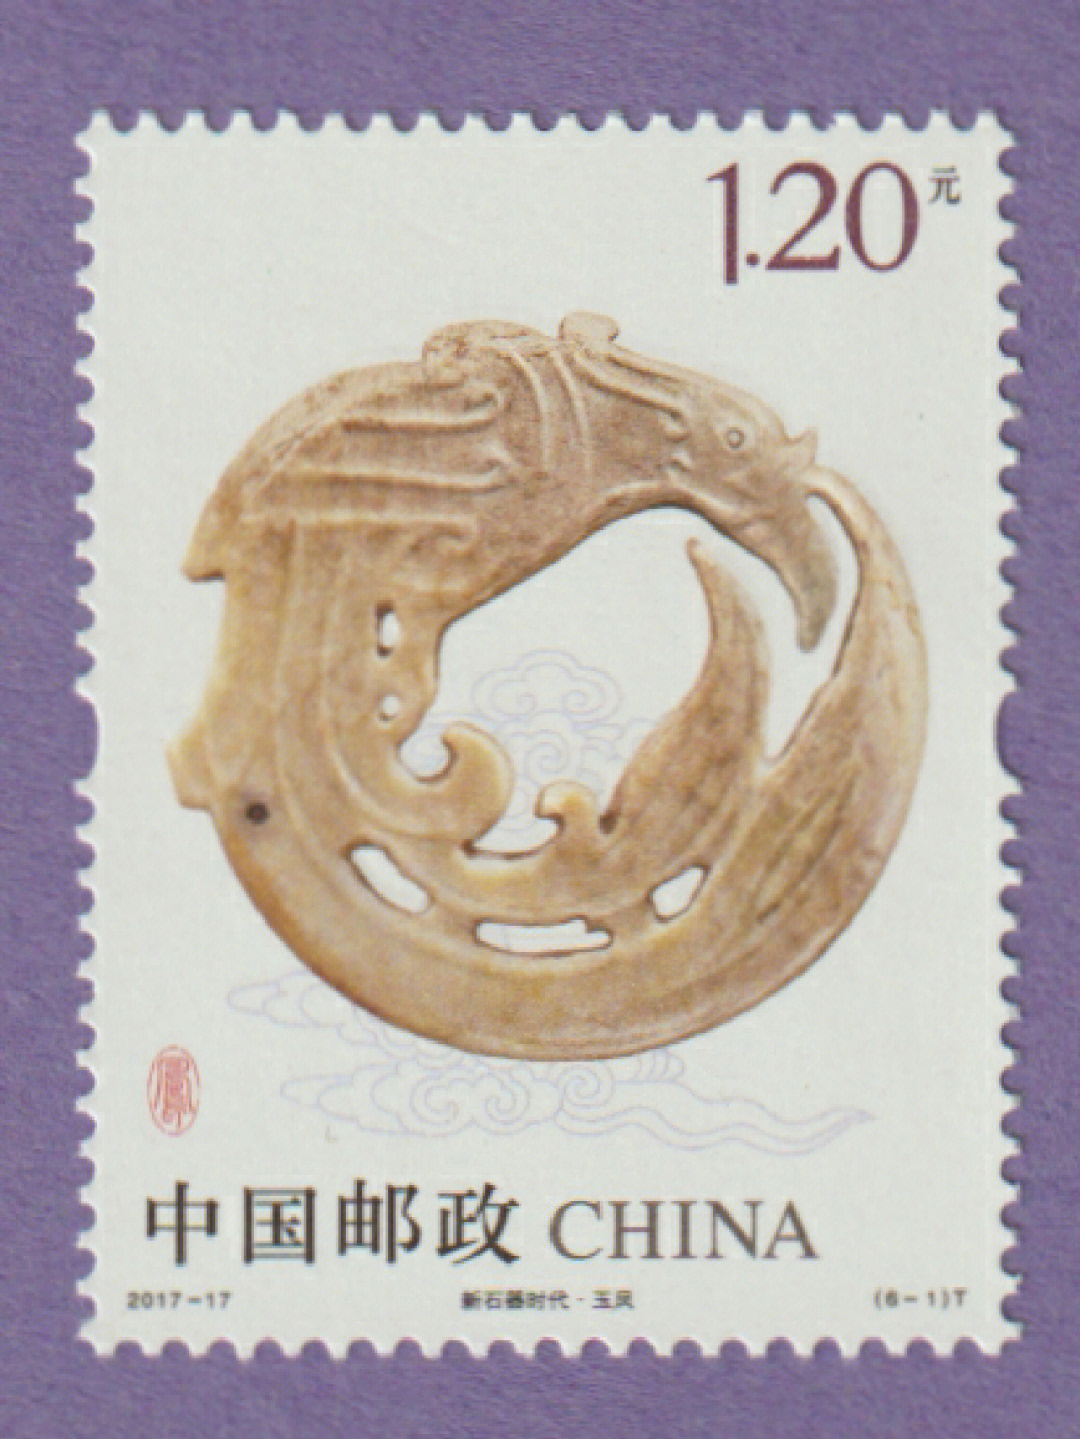 凤是中国先民的古老图腾凤图案常见于历史器物